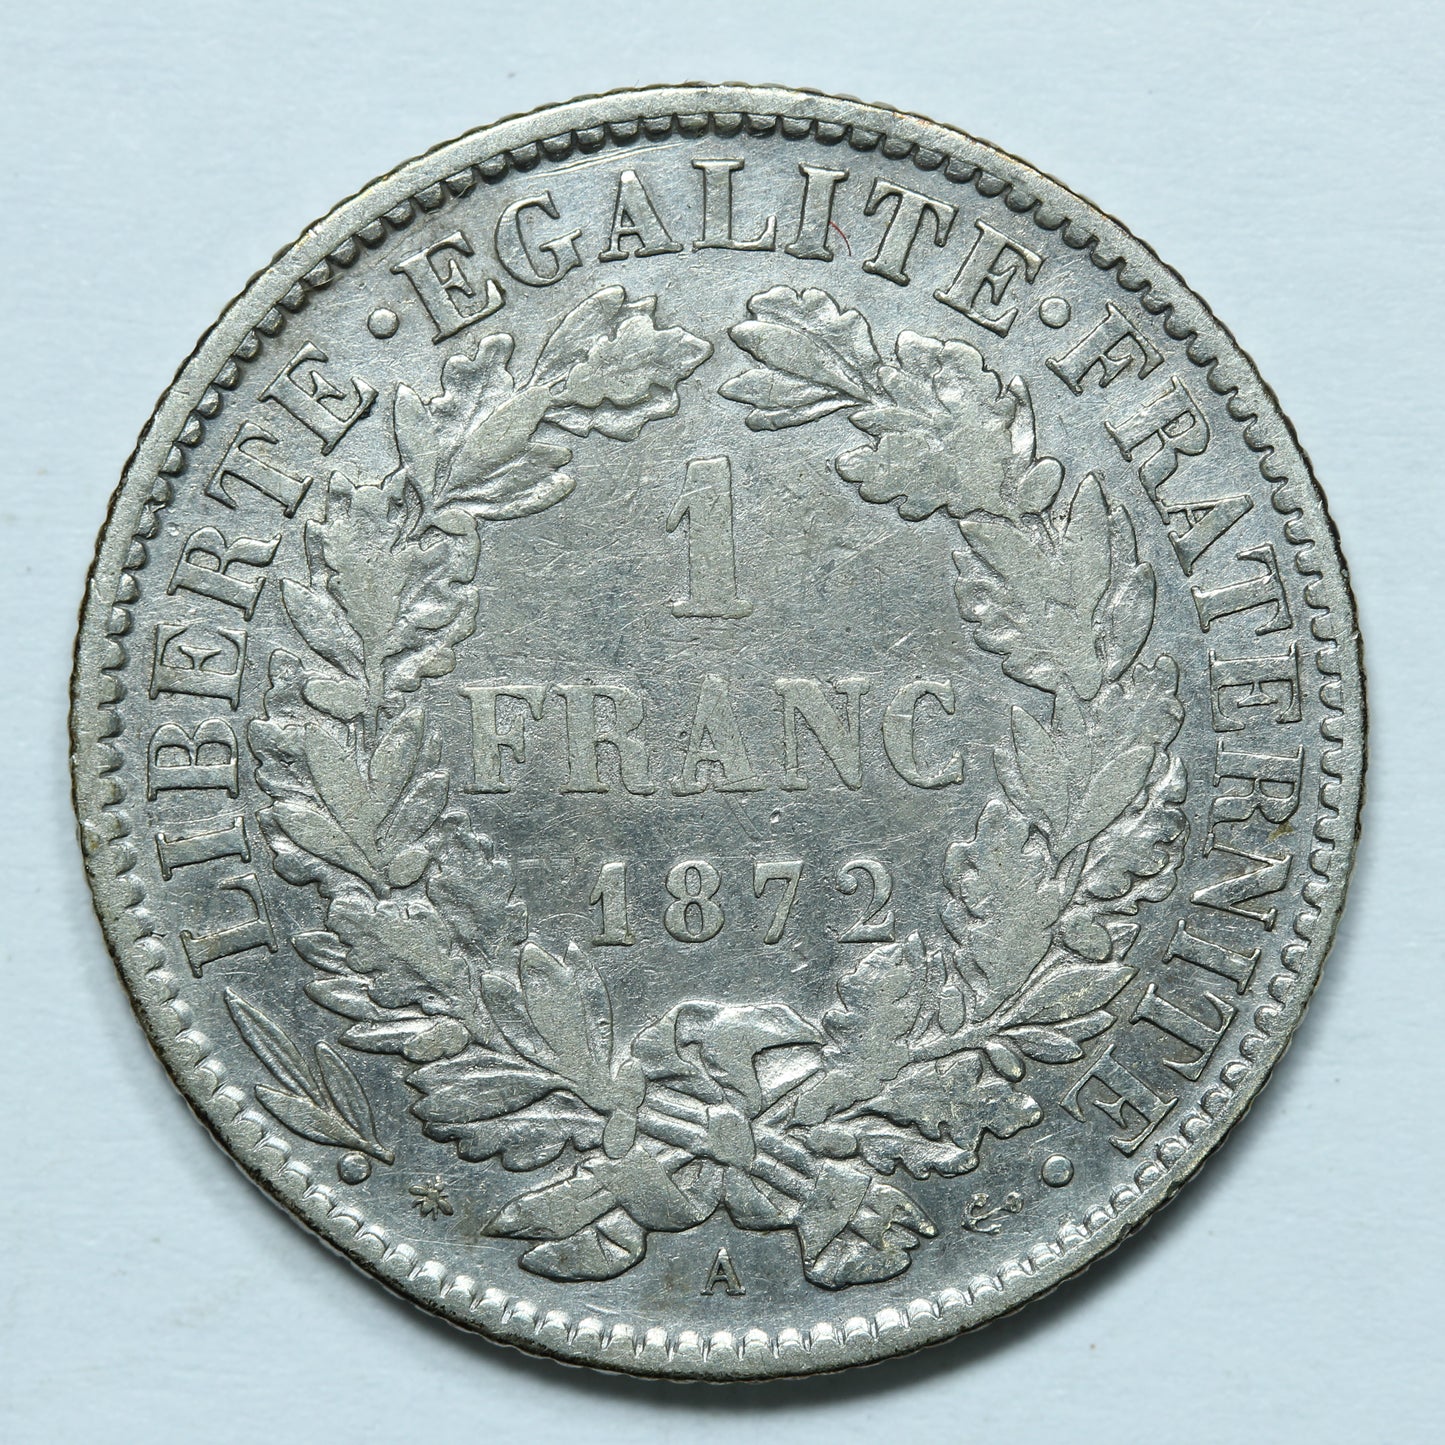 1872 1 Franc France Third Republic Silver Coin - KM# 822.1